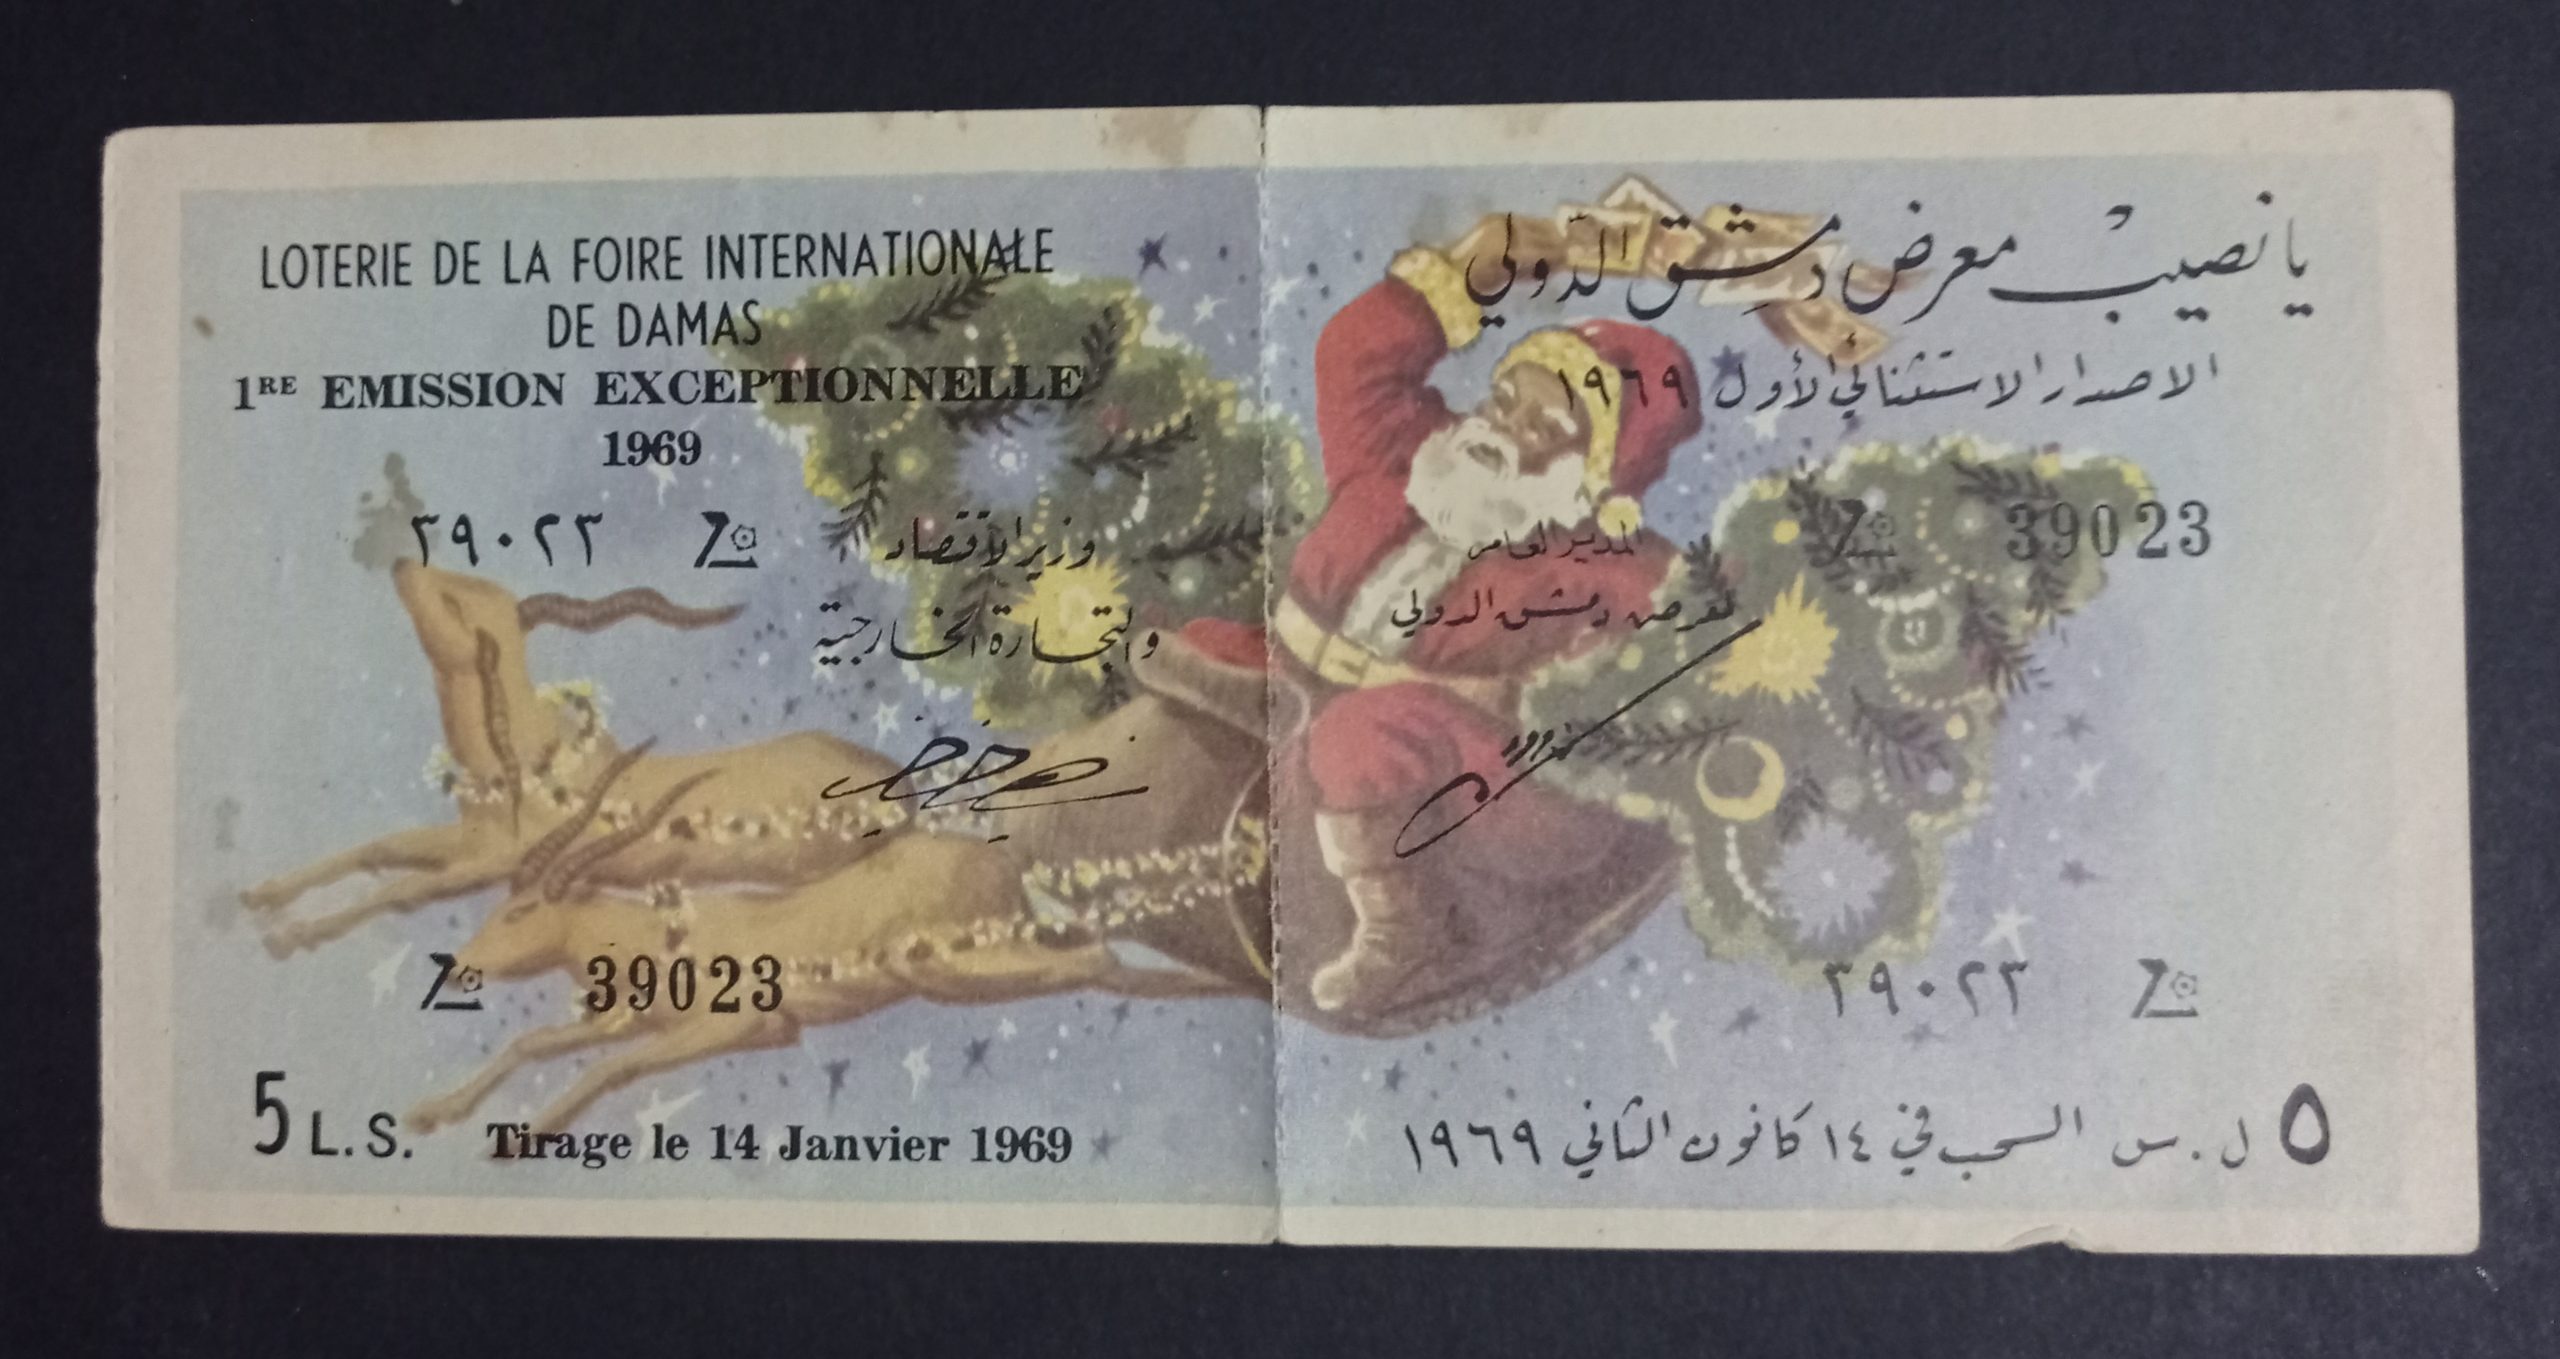 التاريخ السوري المعاصر - يانصيب معرض دمشق الدولي - الإصدار الاستثنائي الأول عام 1969